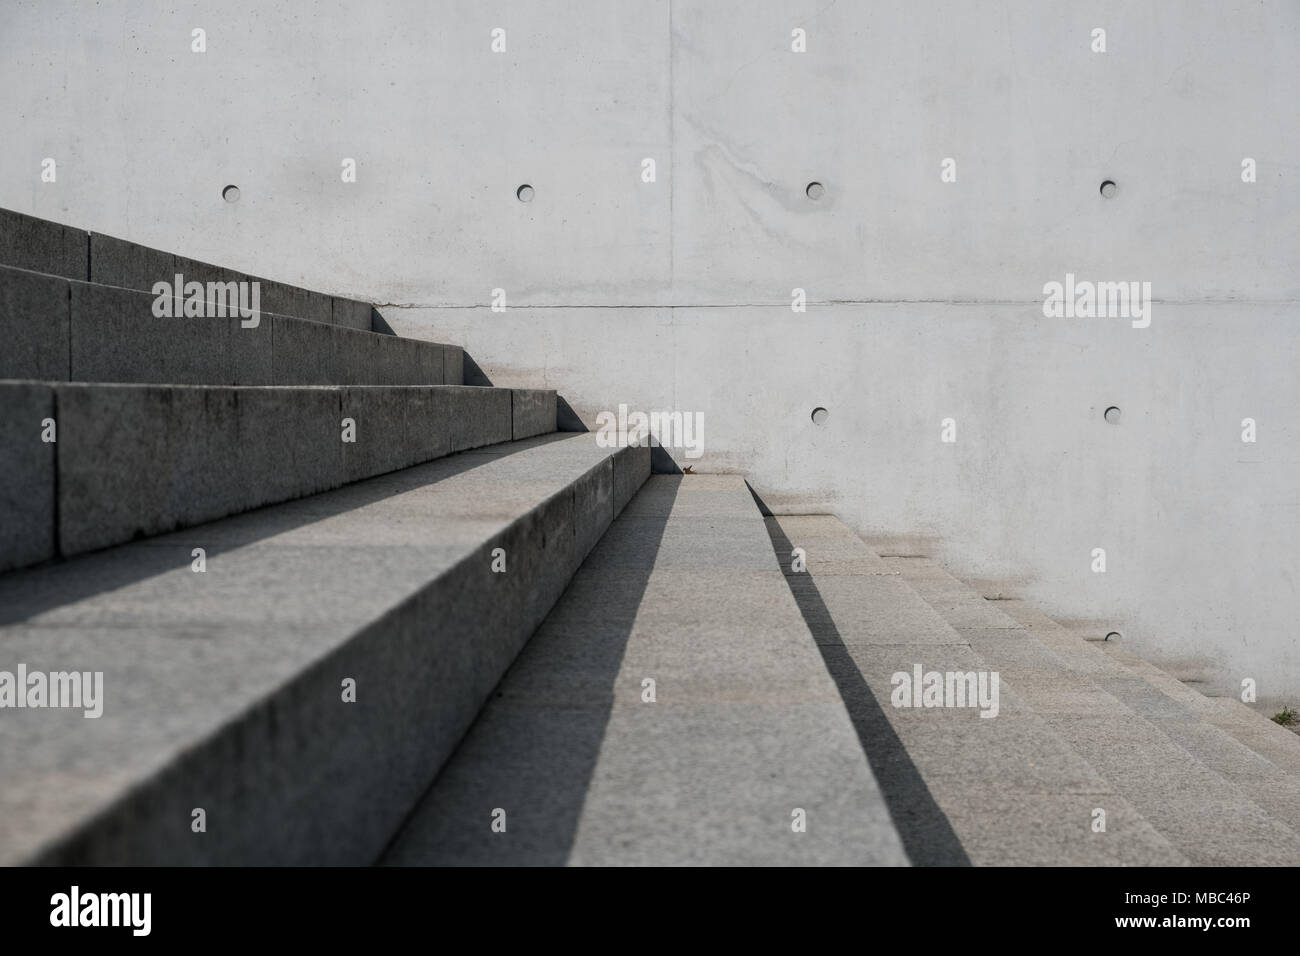 Treppen im Freien und konkreten Hintergrund - Treppe, außen Gebäude Stockfoto